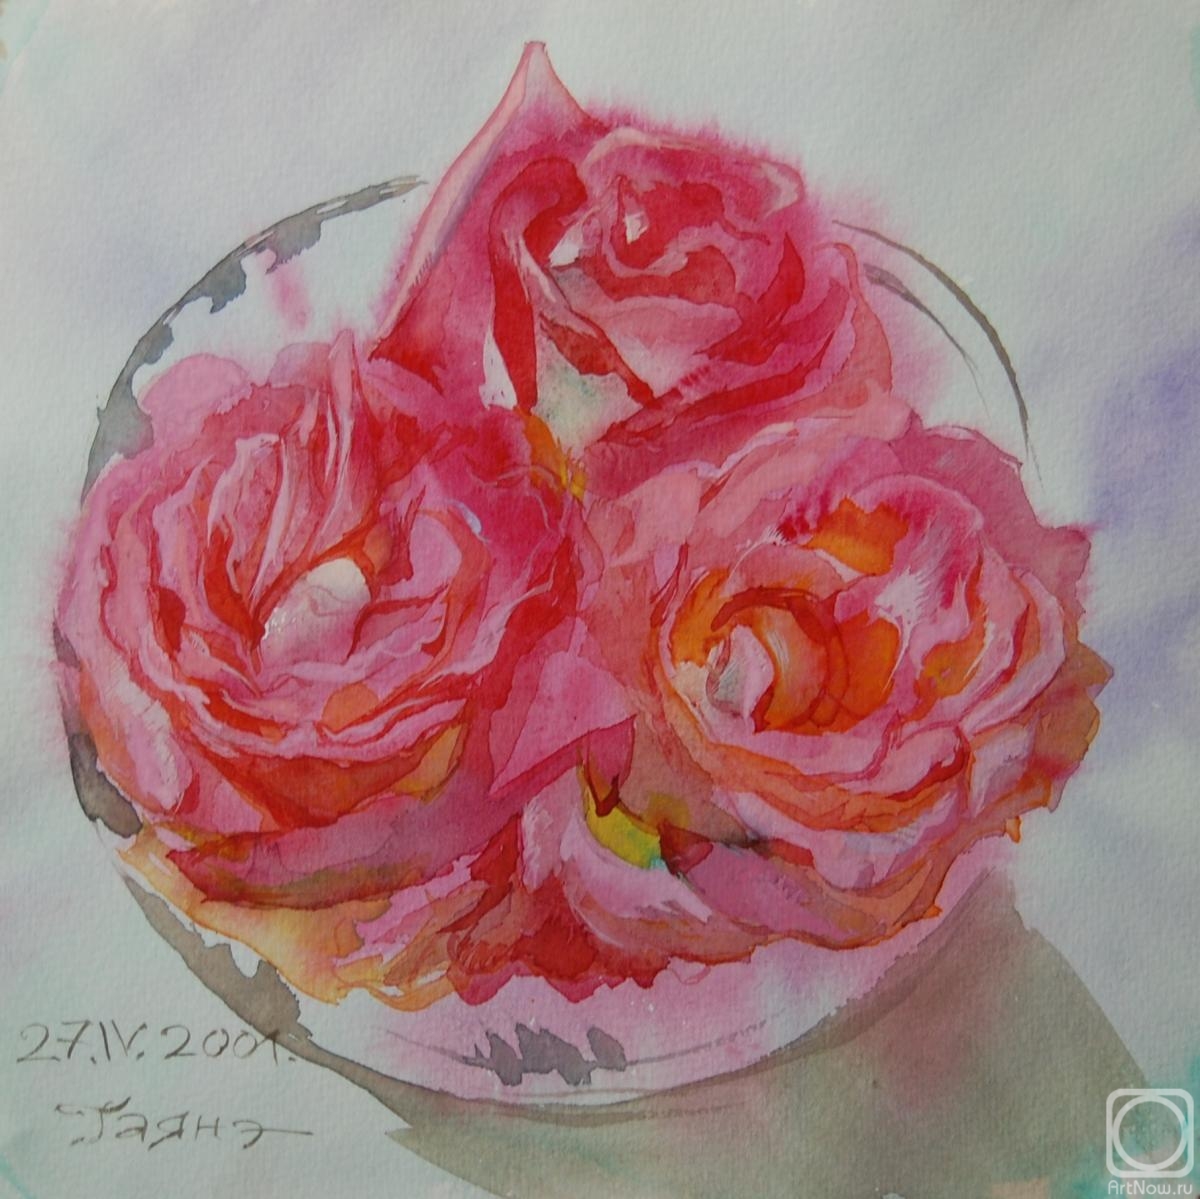 Dobrovolskaya Gayane. Roses in a crystal vase